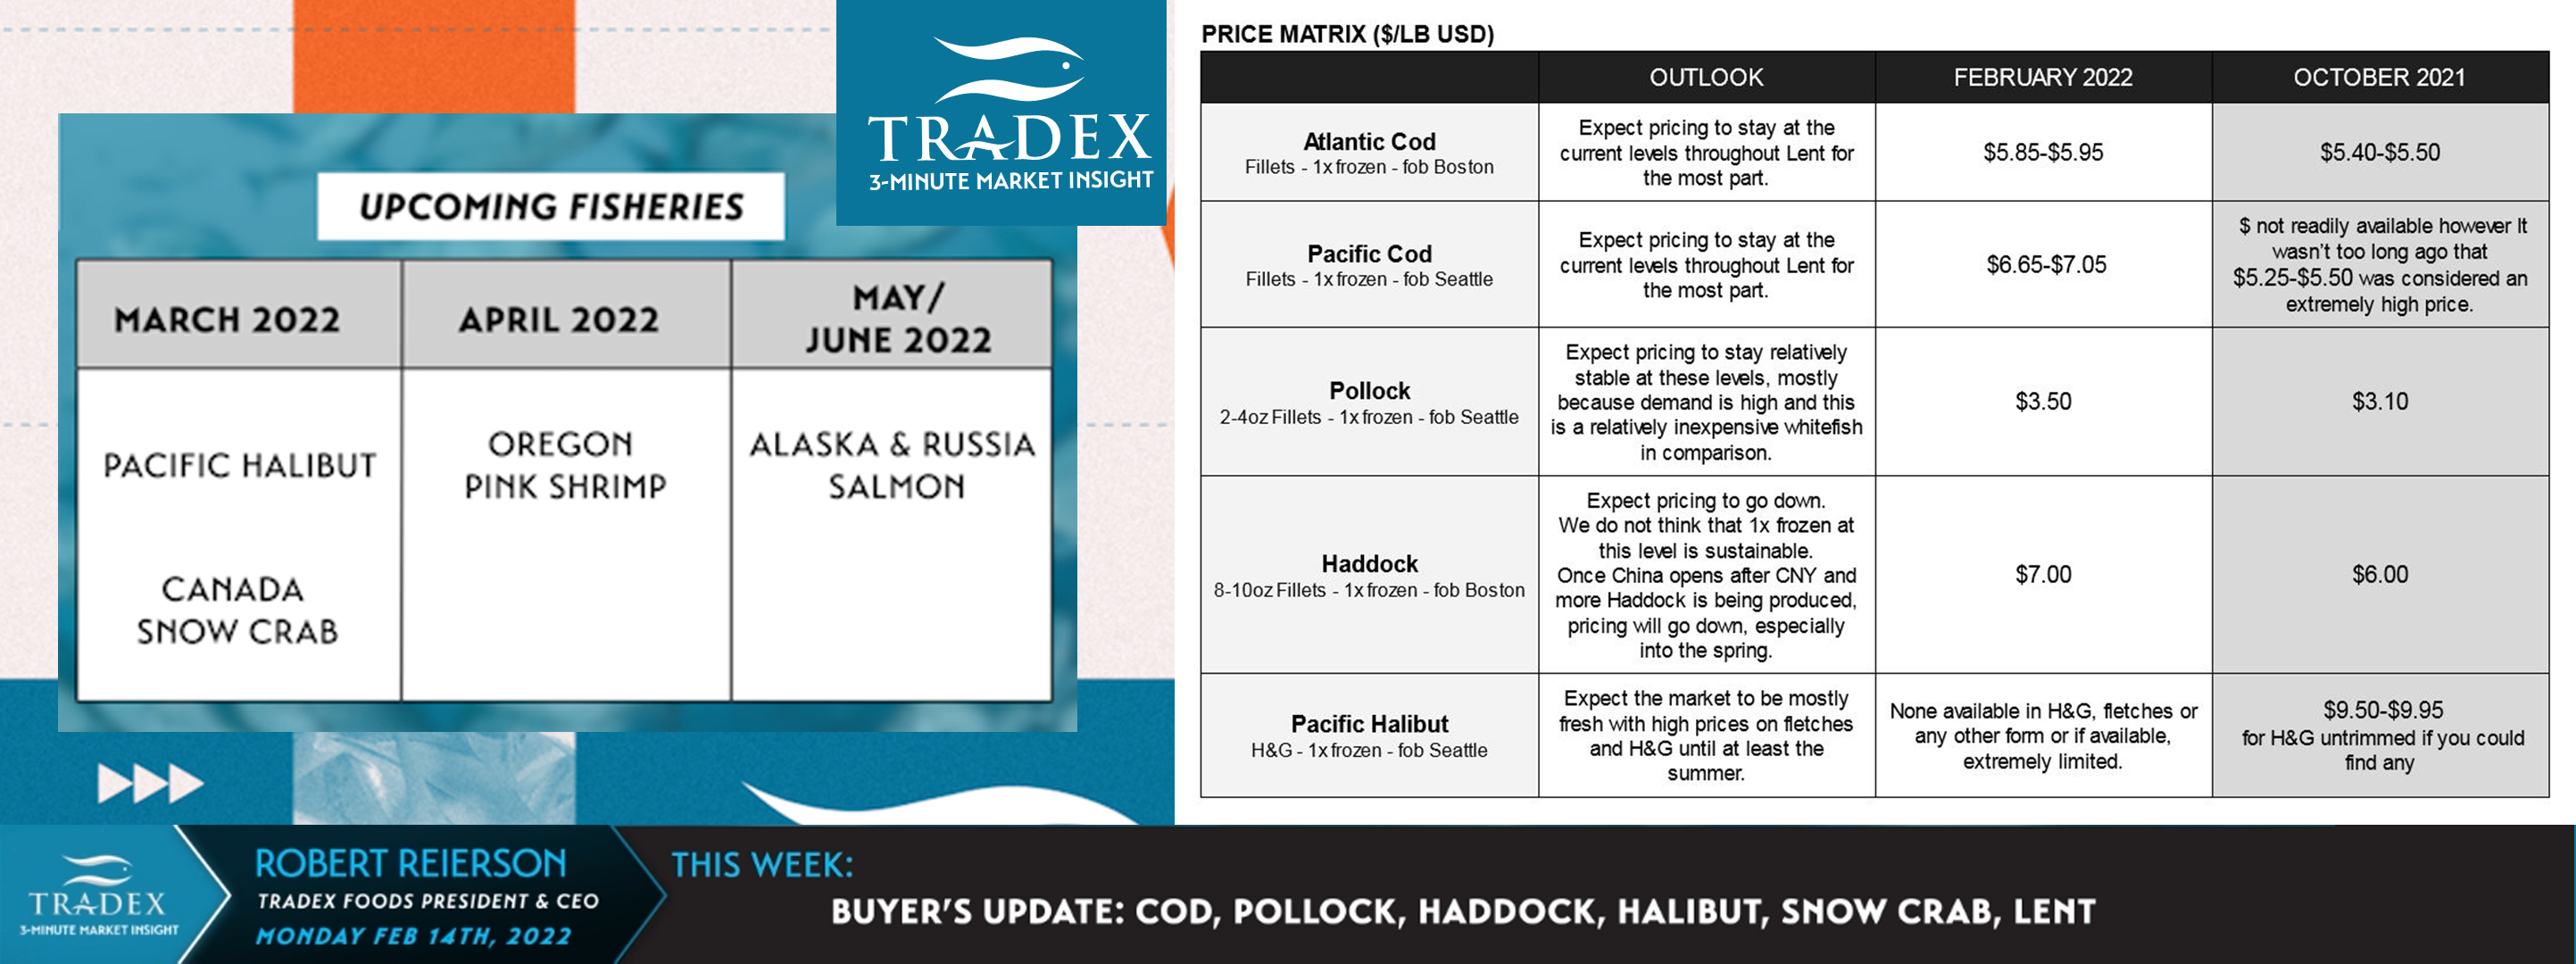 Buyer’s Update: Cod, Pollock, Haddock, Halibut, Snow Crab, Lent